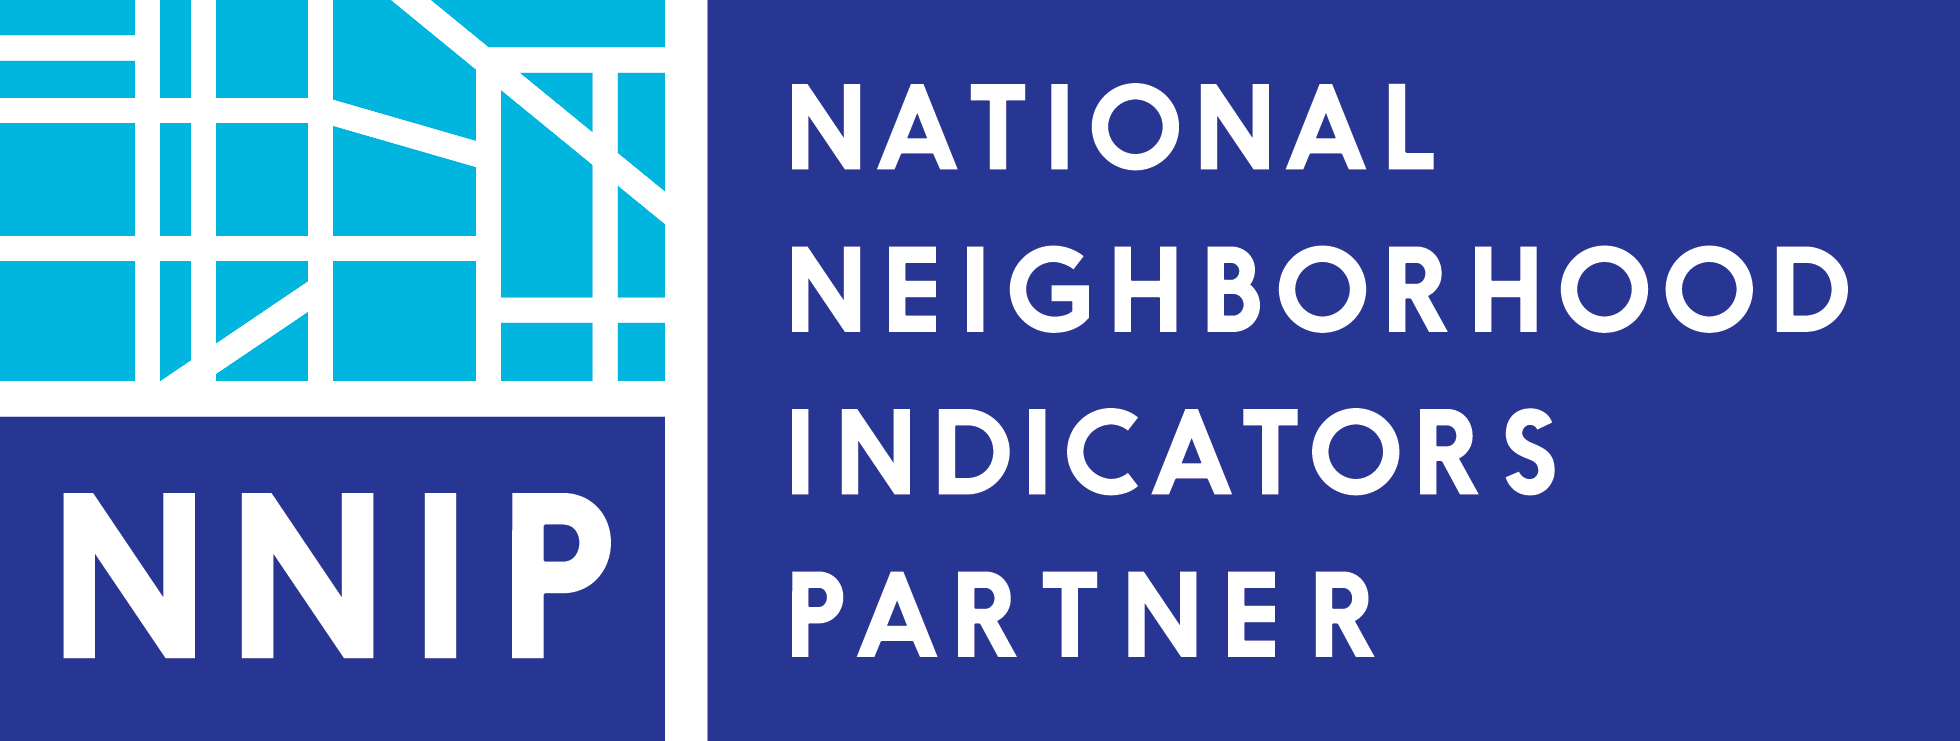 National Neighborhood Indicators Partner logo